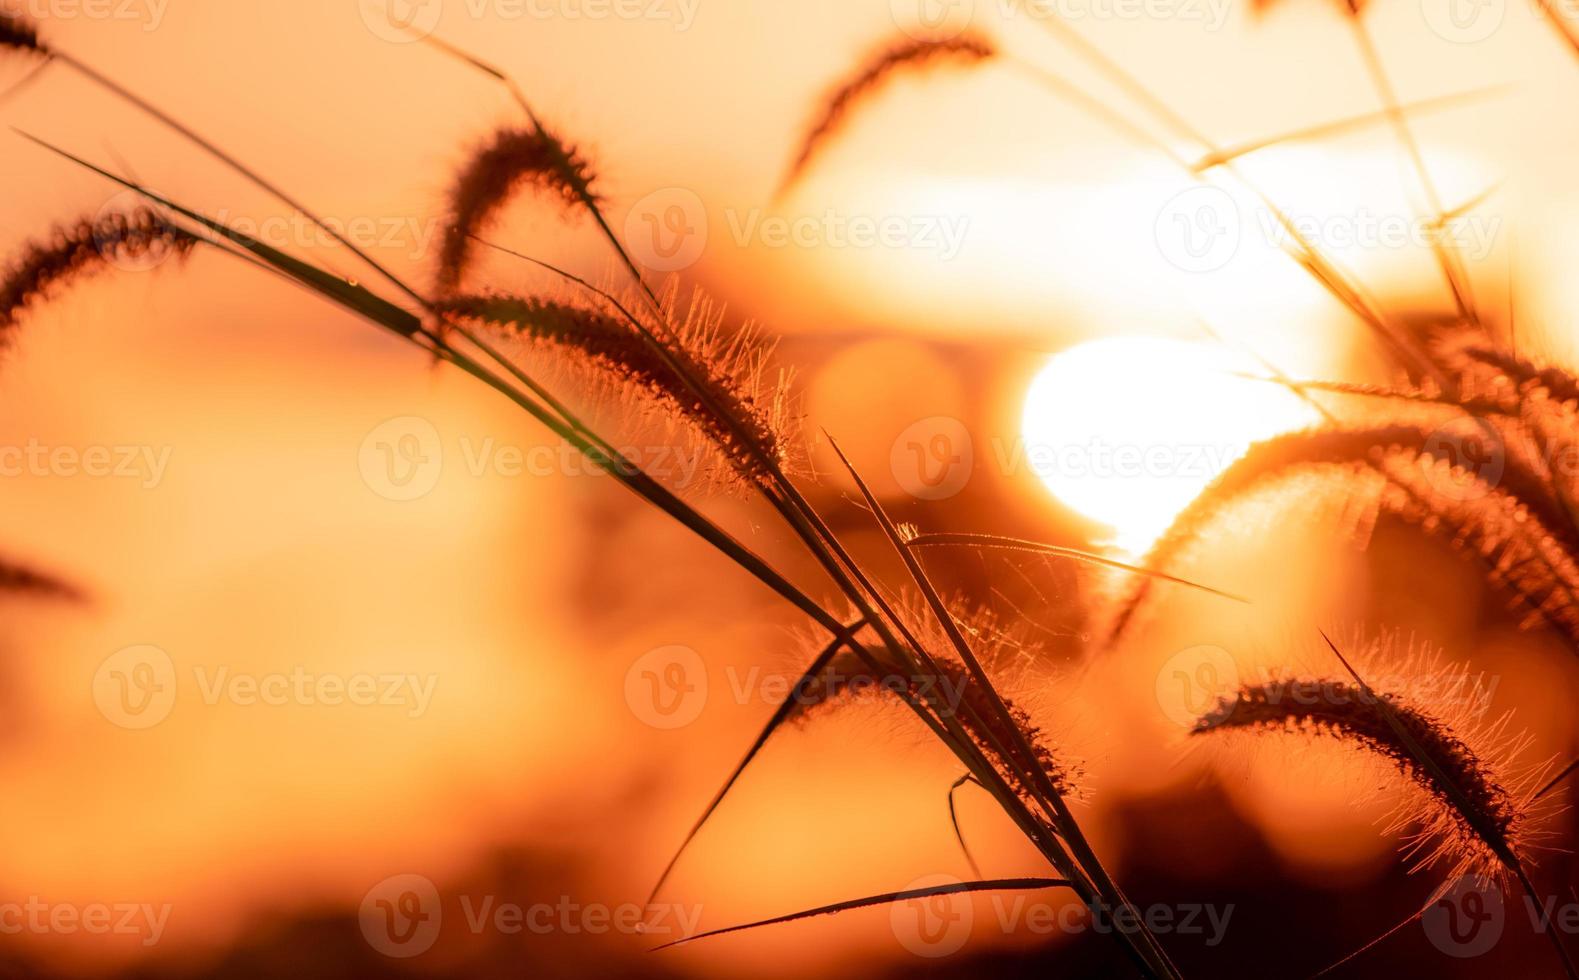 flor de grama prado com gotas de orvalho de manhã com céu dourado do nascer do sol. foco seletivo na flor da grama no fundo do bokeh desfocado do sol amarelo e laranja. campo de grama com céu do nascer do sol. foto